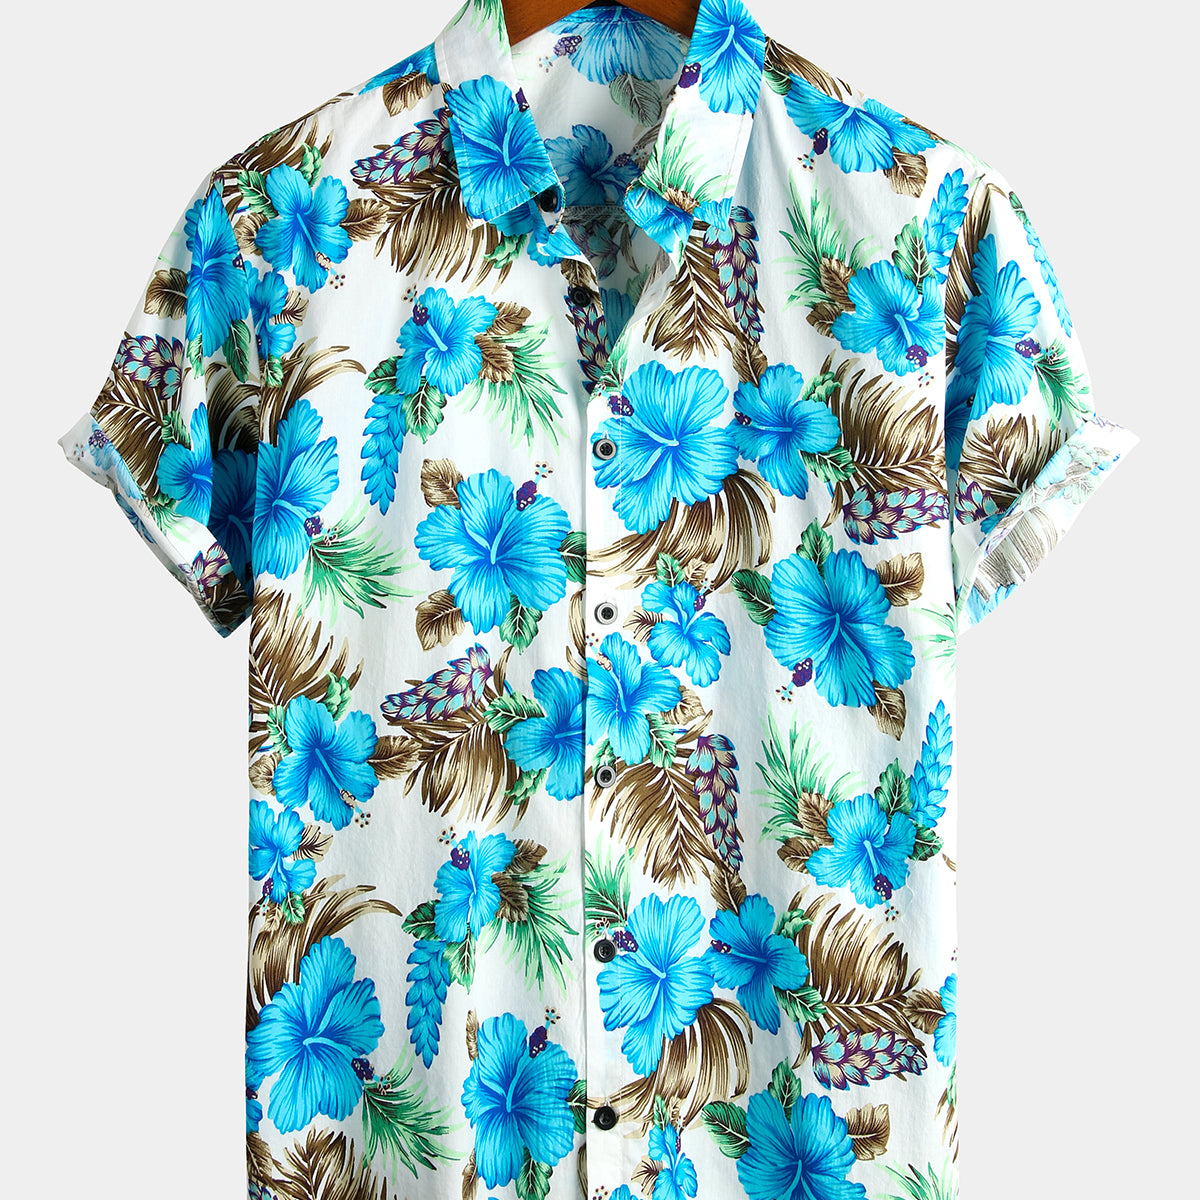 Men's Flower Cotton Tropical Hawaiian Shirt